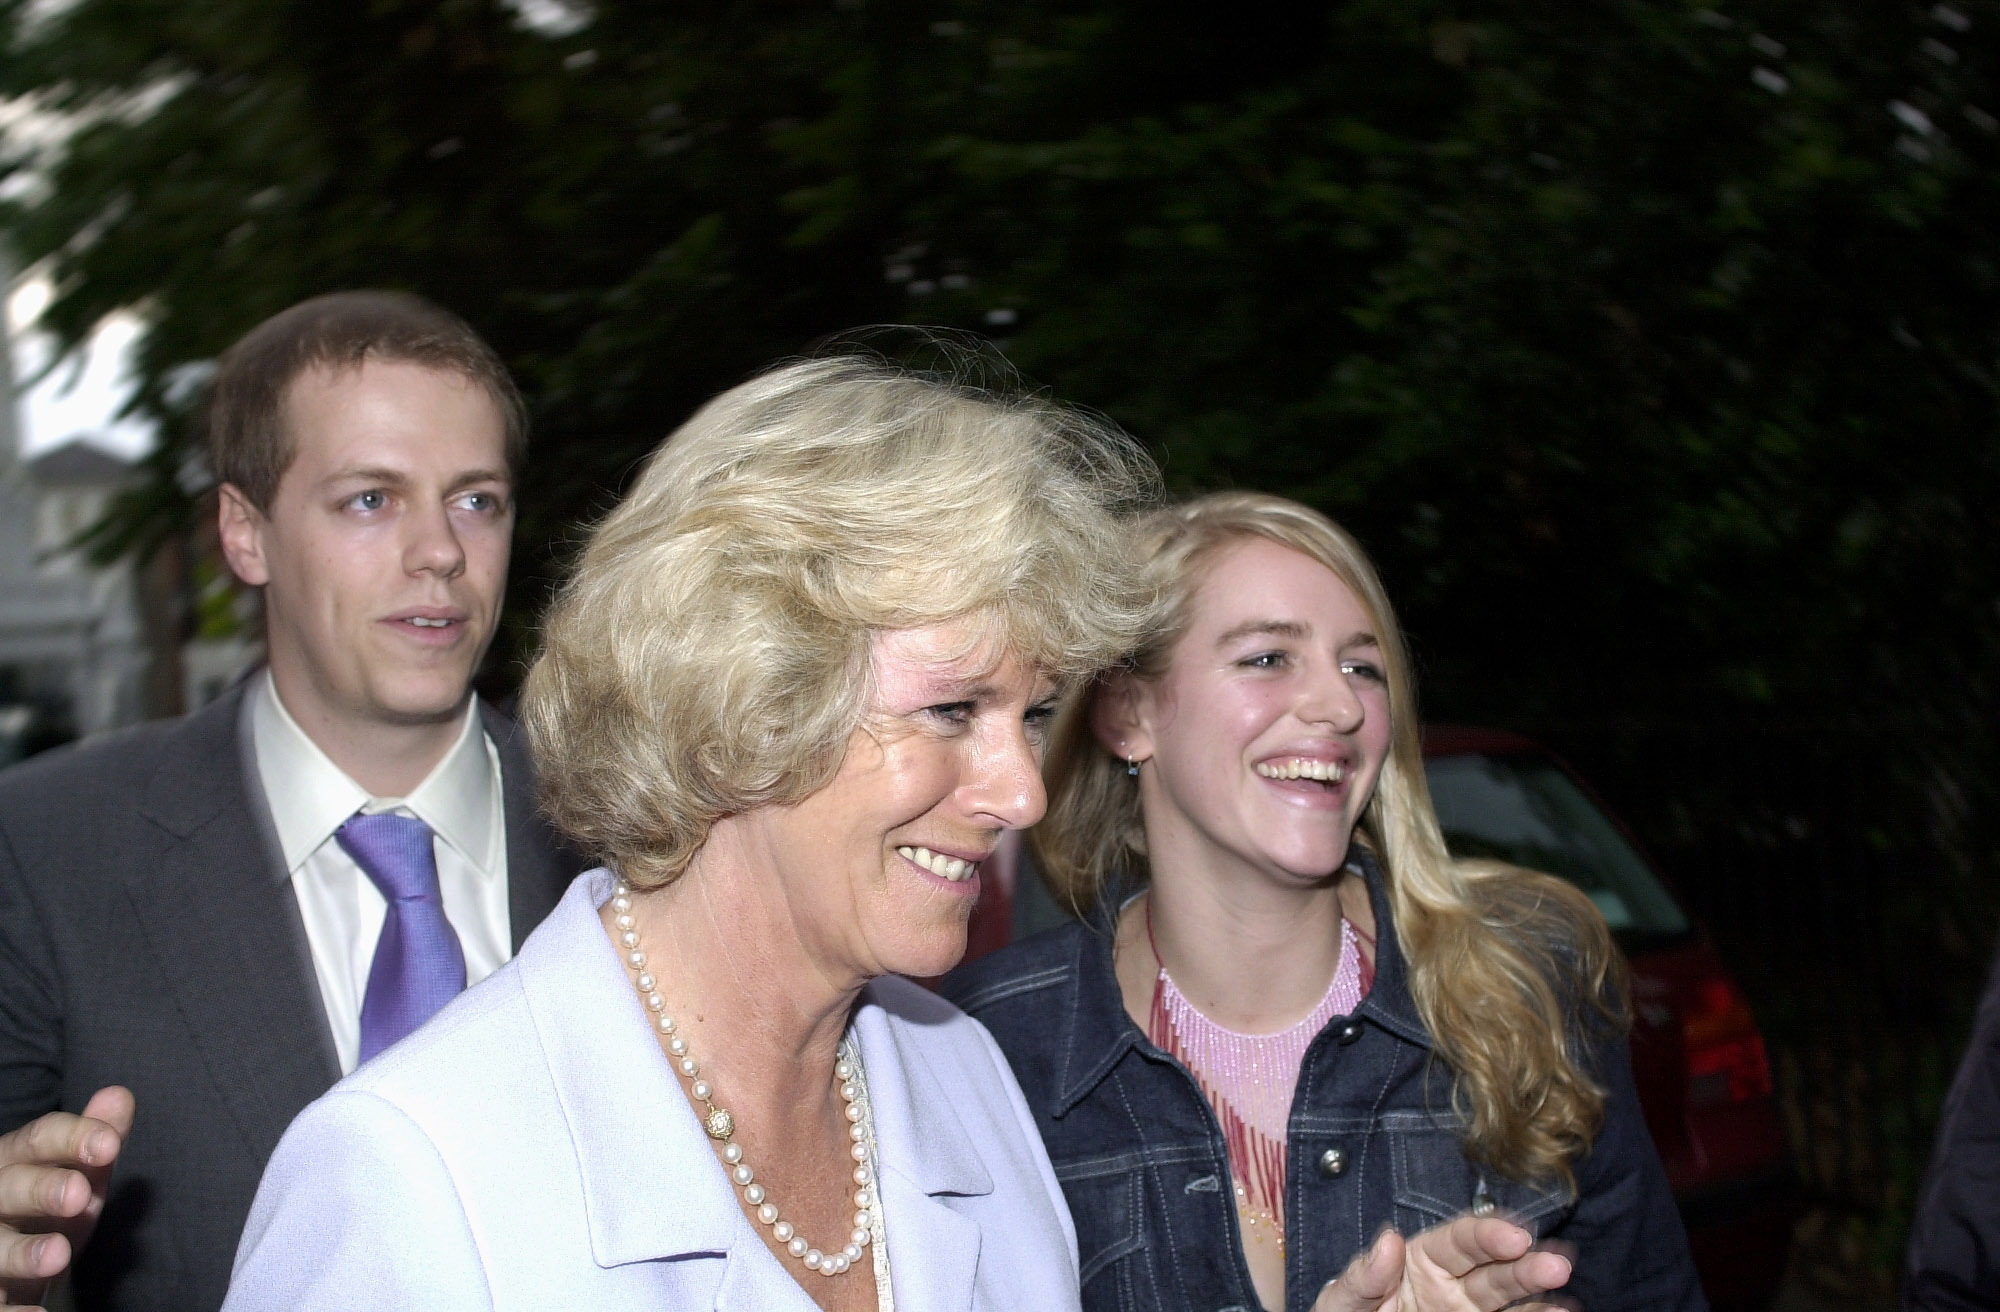 La reine Camilla et ses enfants, Tom Parker Bowles et Laura Lopes, à Londres le 5 juillet 2000. | Source : Getty Images